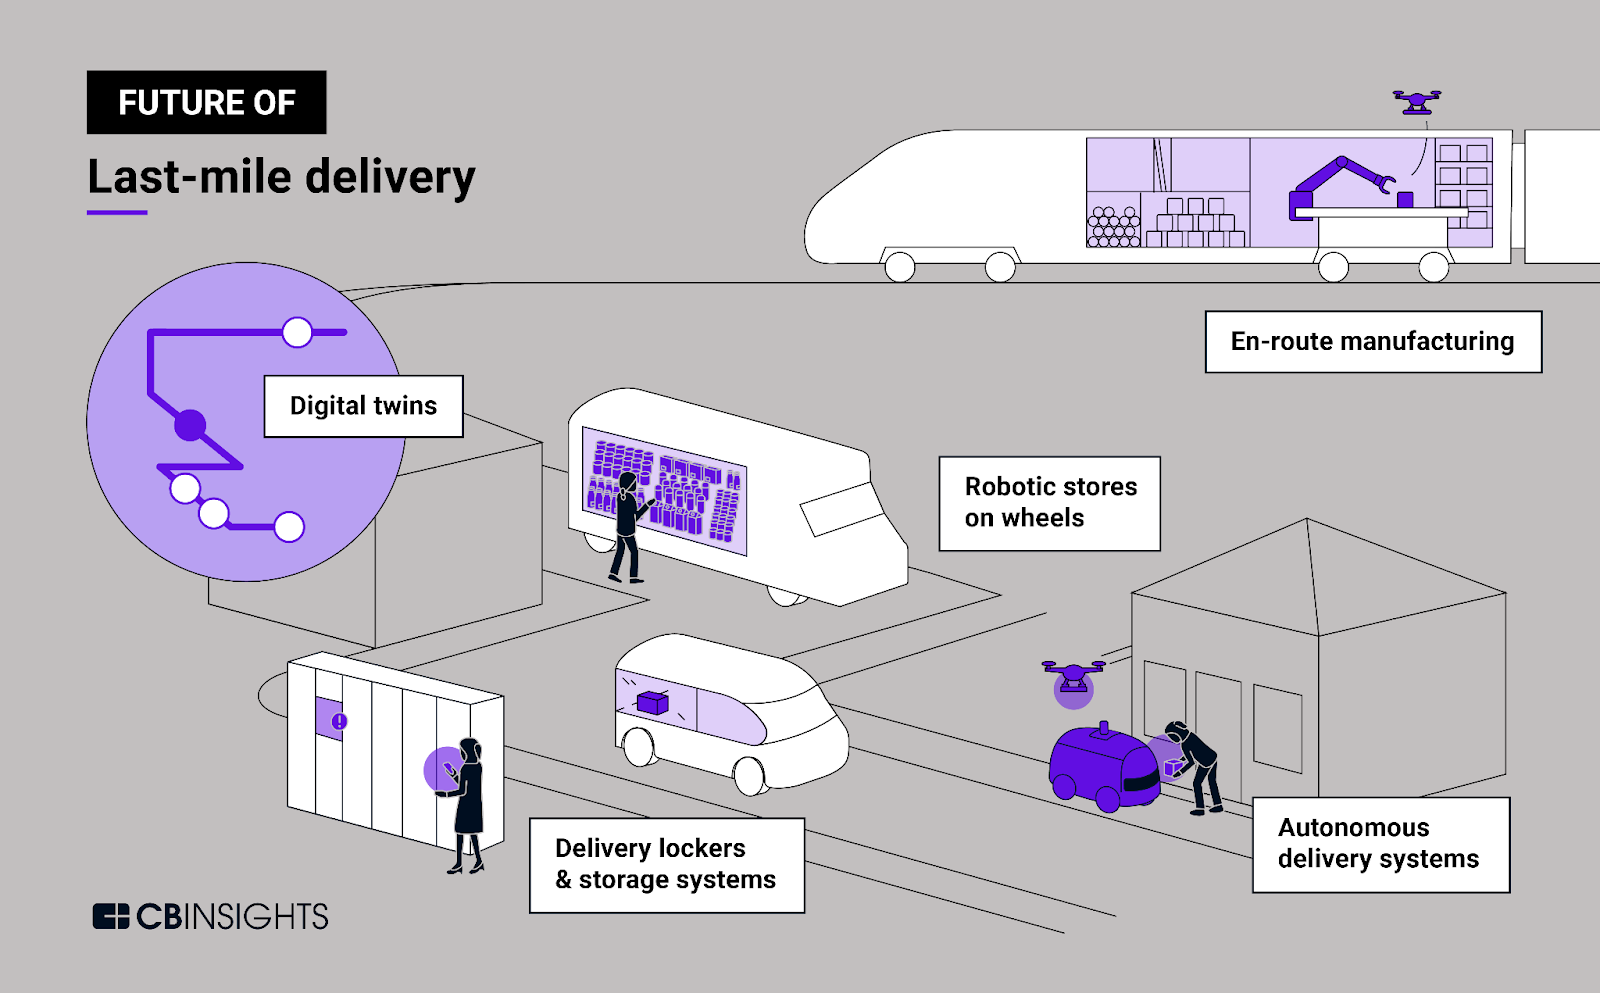 E-commerce logistics - Future of Last-mile delivery

